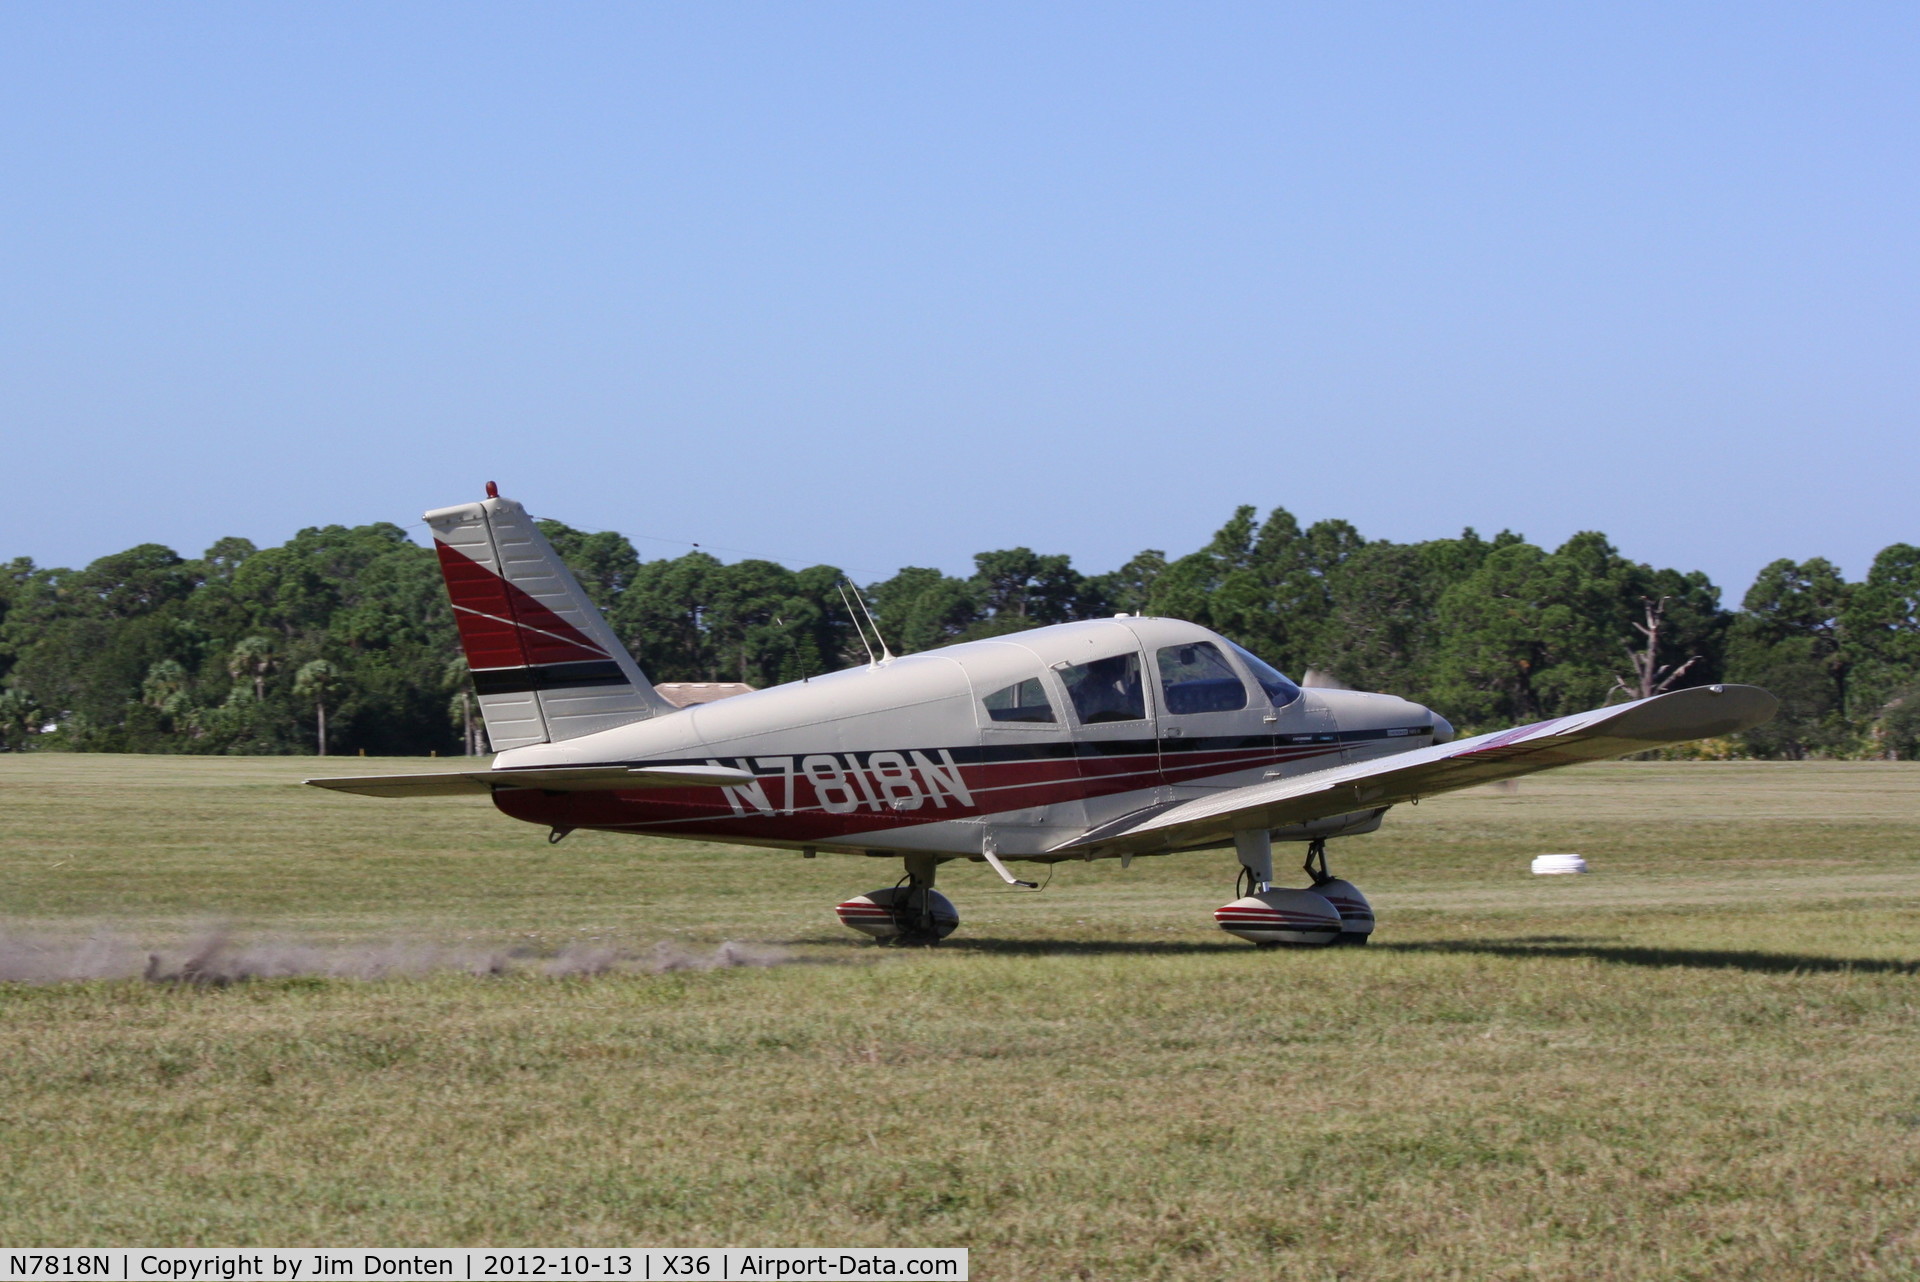 N7818N, 1968 Piper PA-28-180 Cherokee C/N 28-5270, Piper Cherokee (N7818N) lands at Buchan Airport